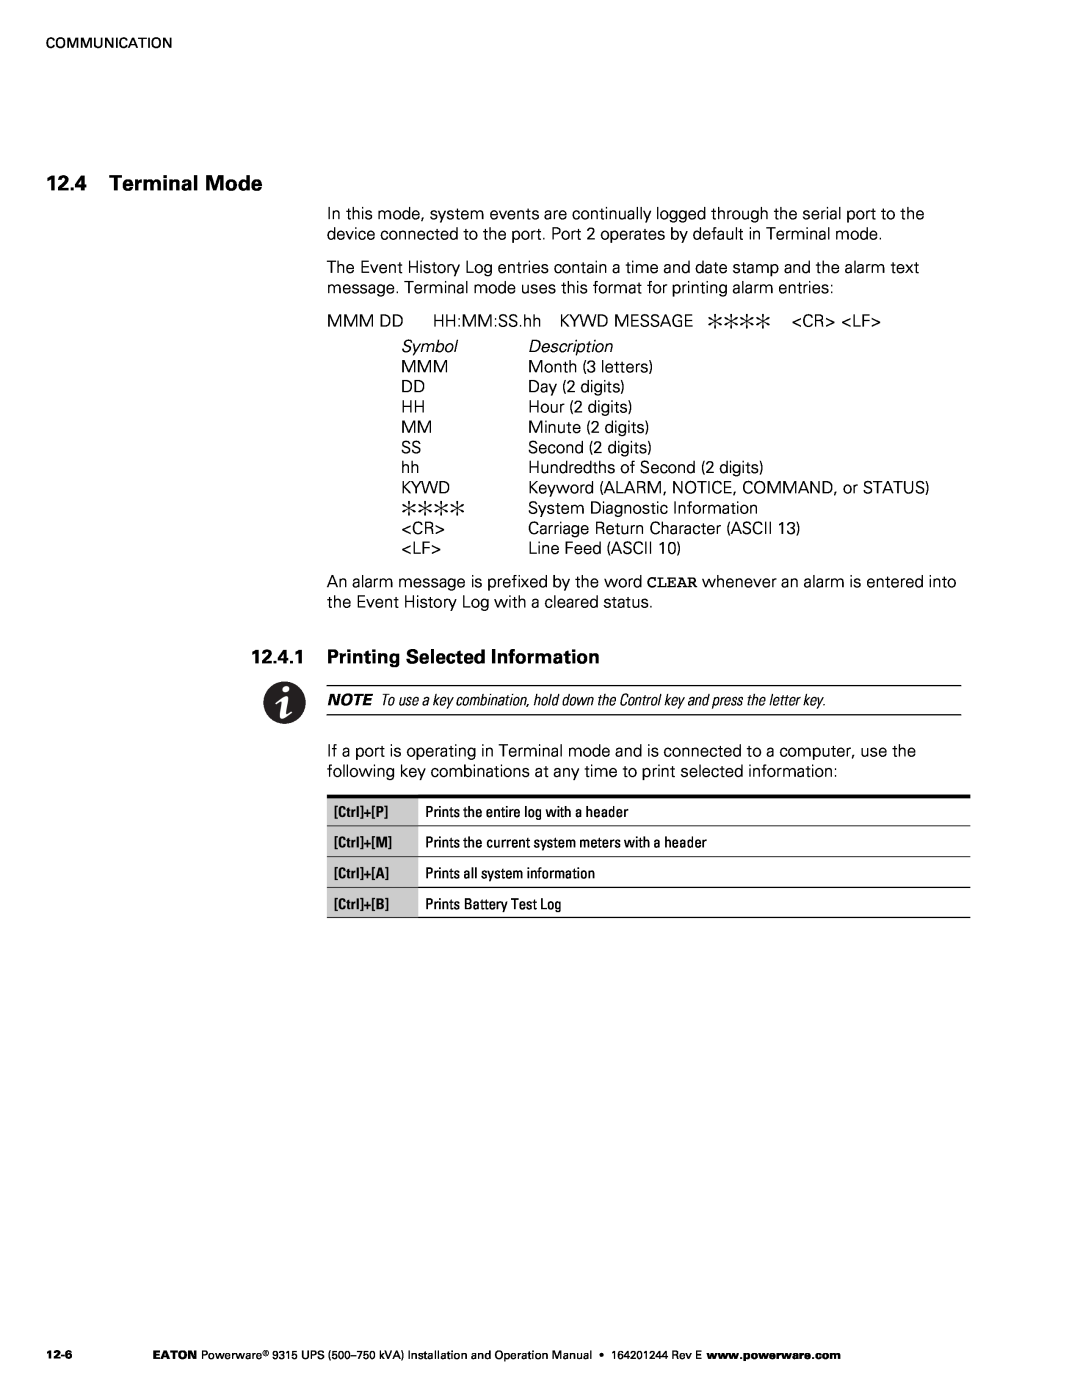 Powerware Powerware 9315 operation manual Terminal Mode, Printing Selected Information 